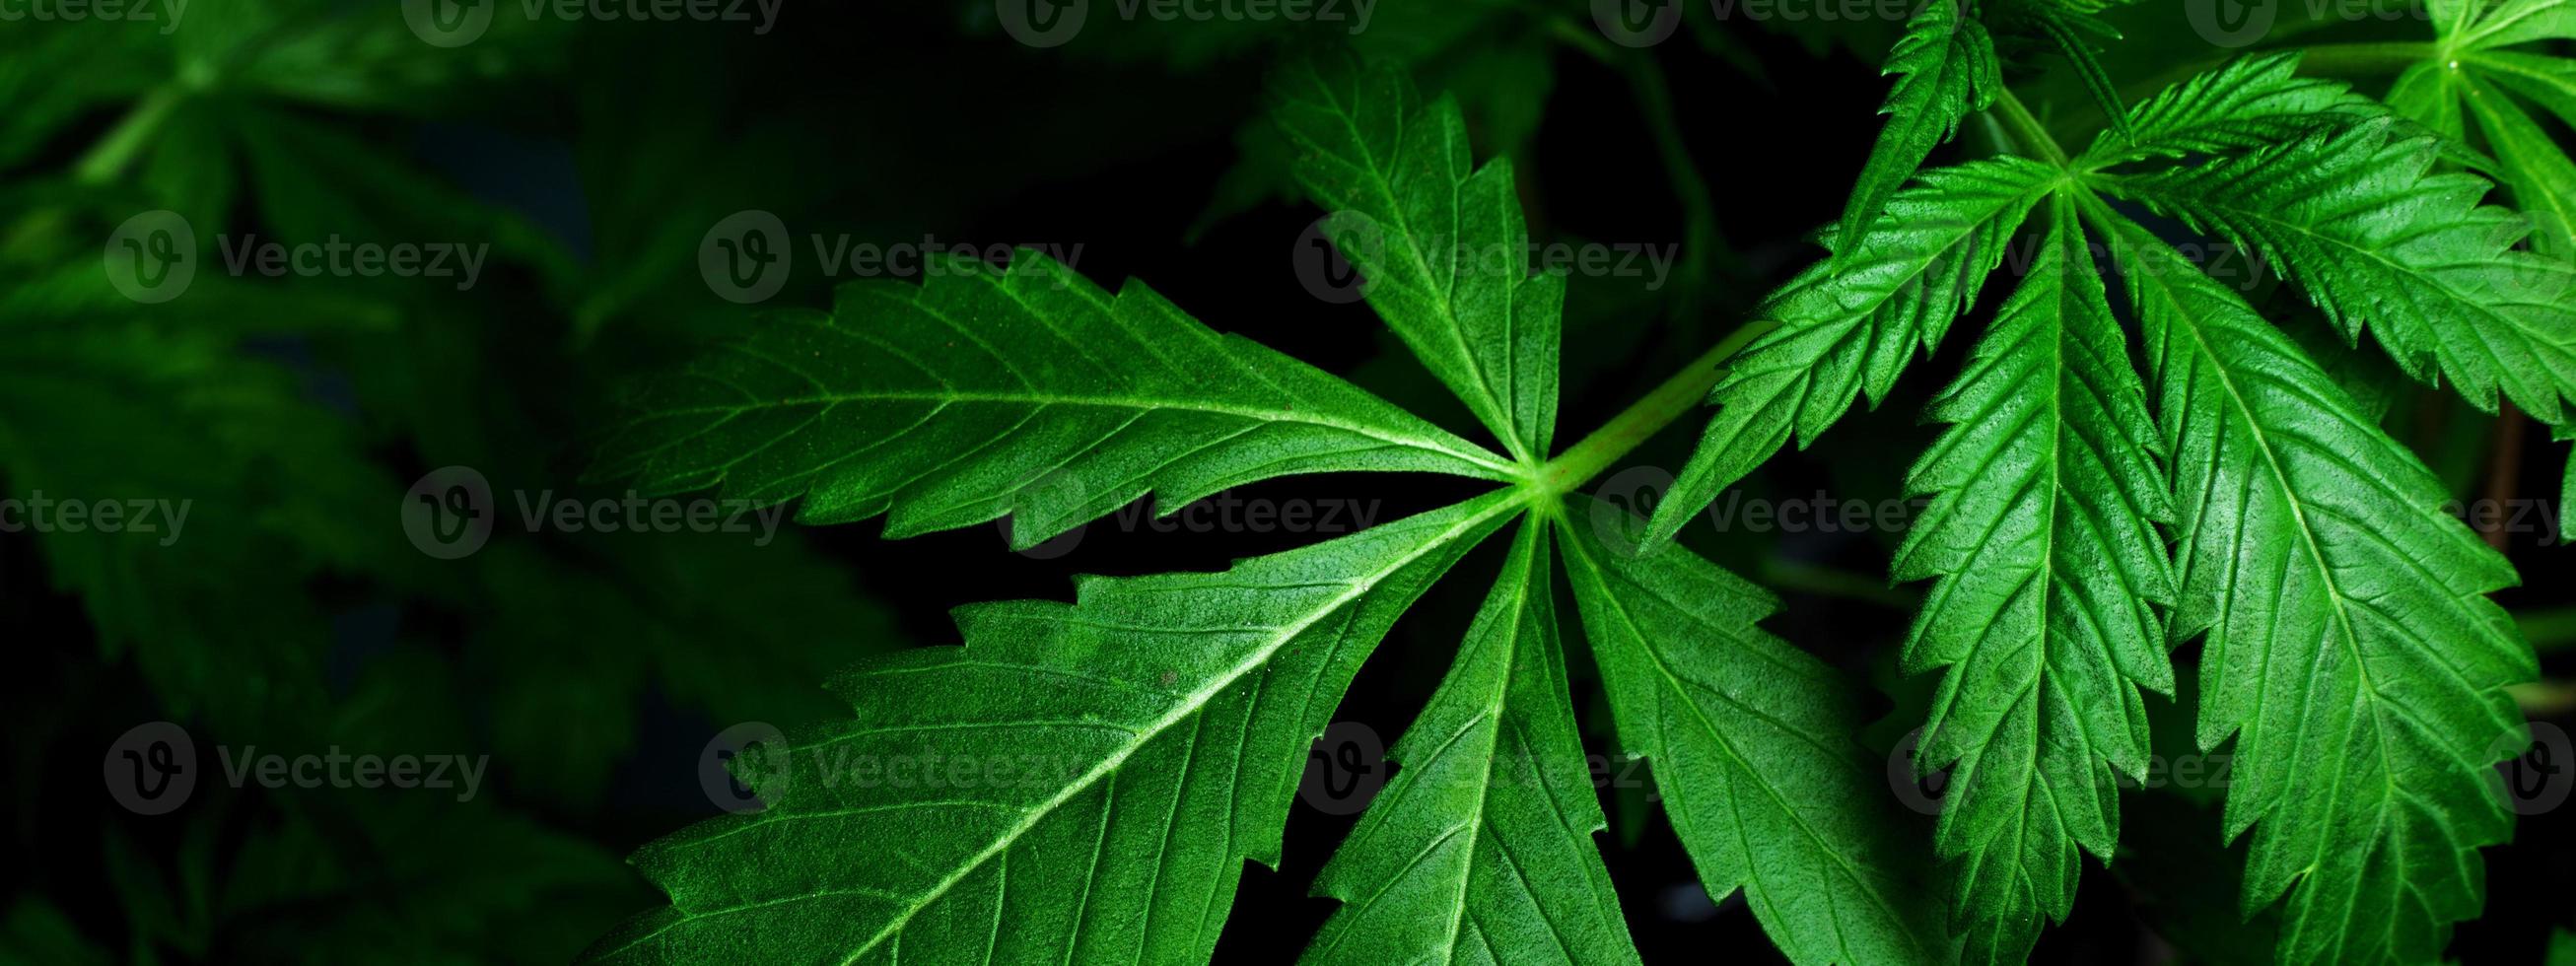 medicinska indica blad, marijuana växt bakgrund närbild foto